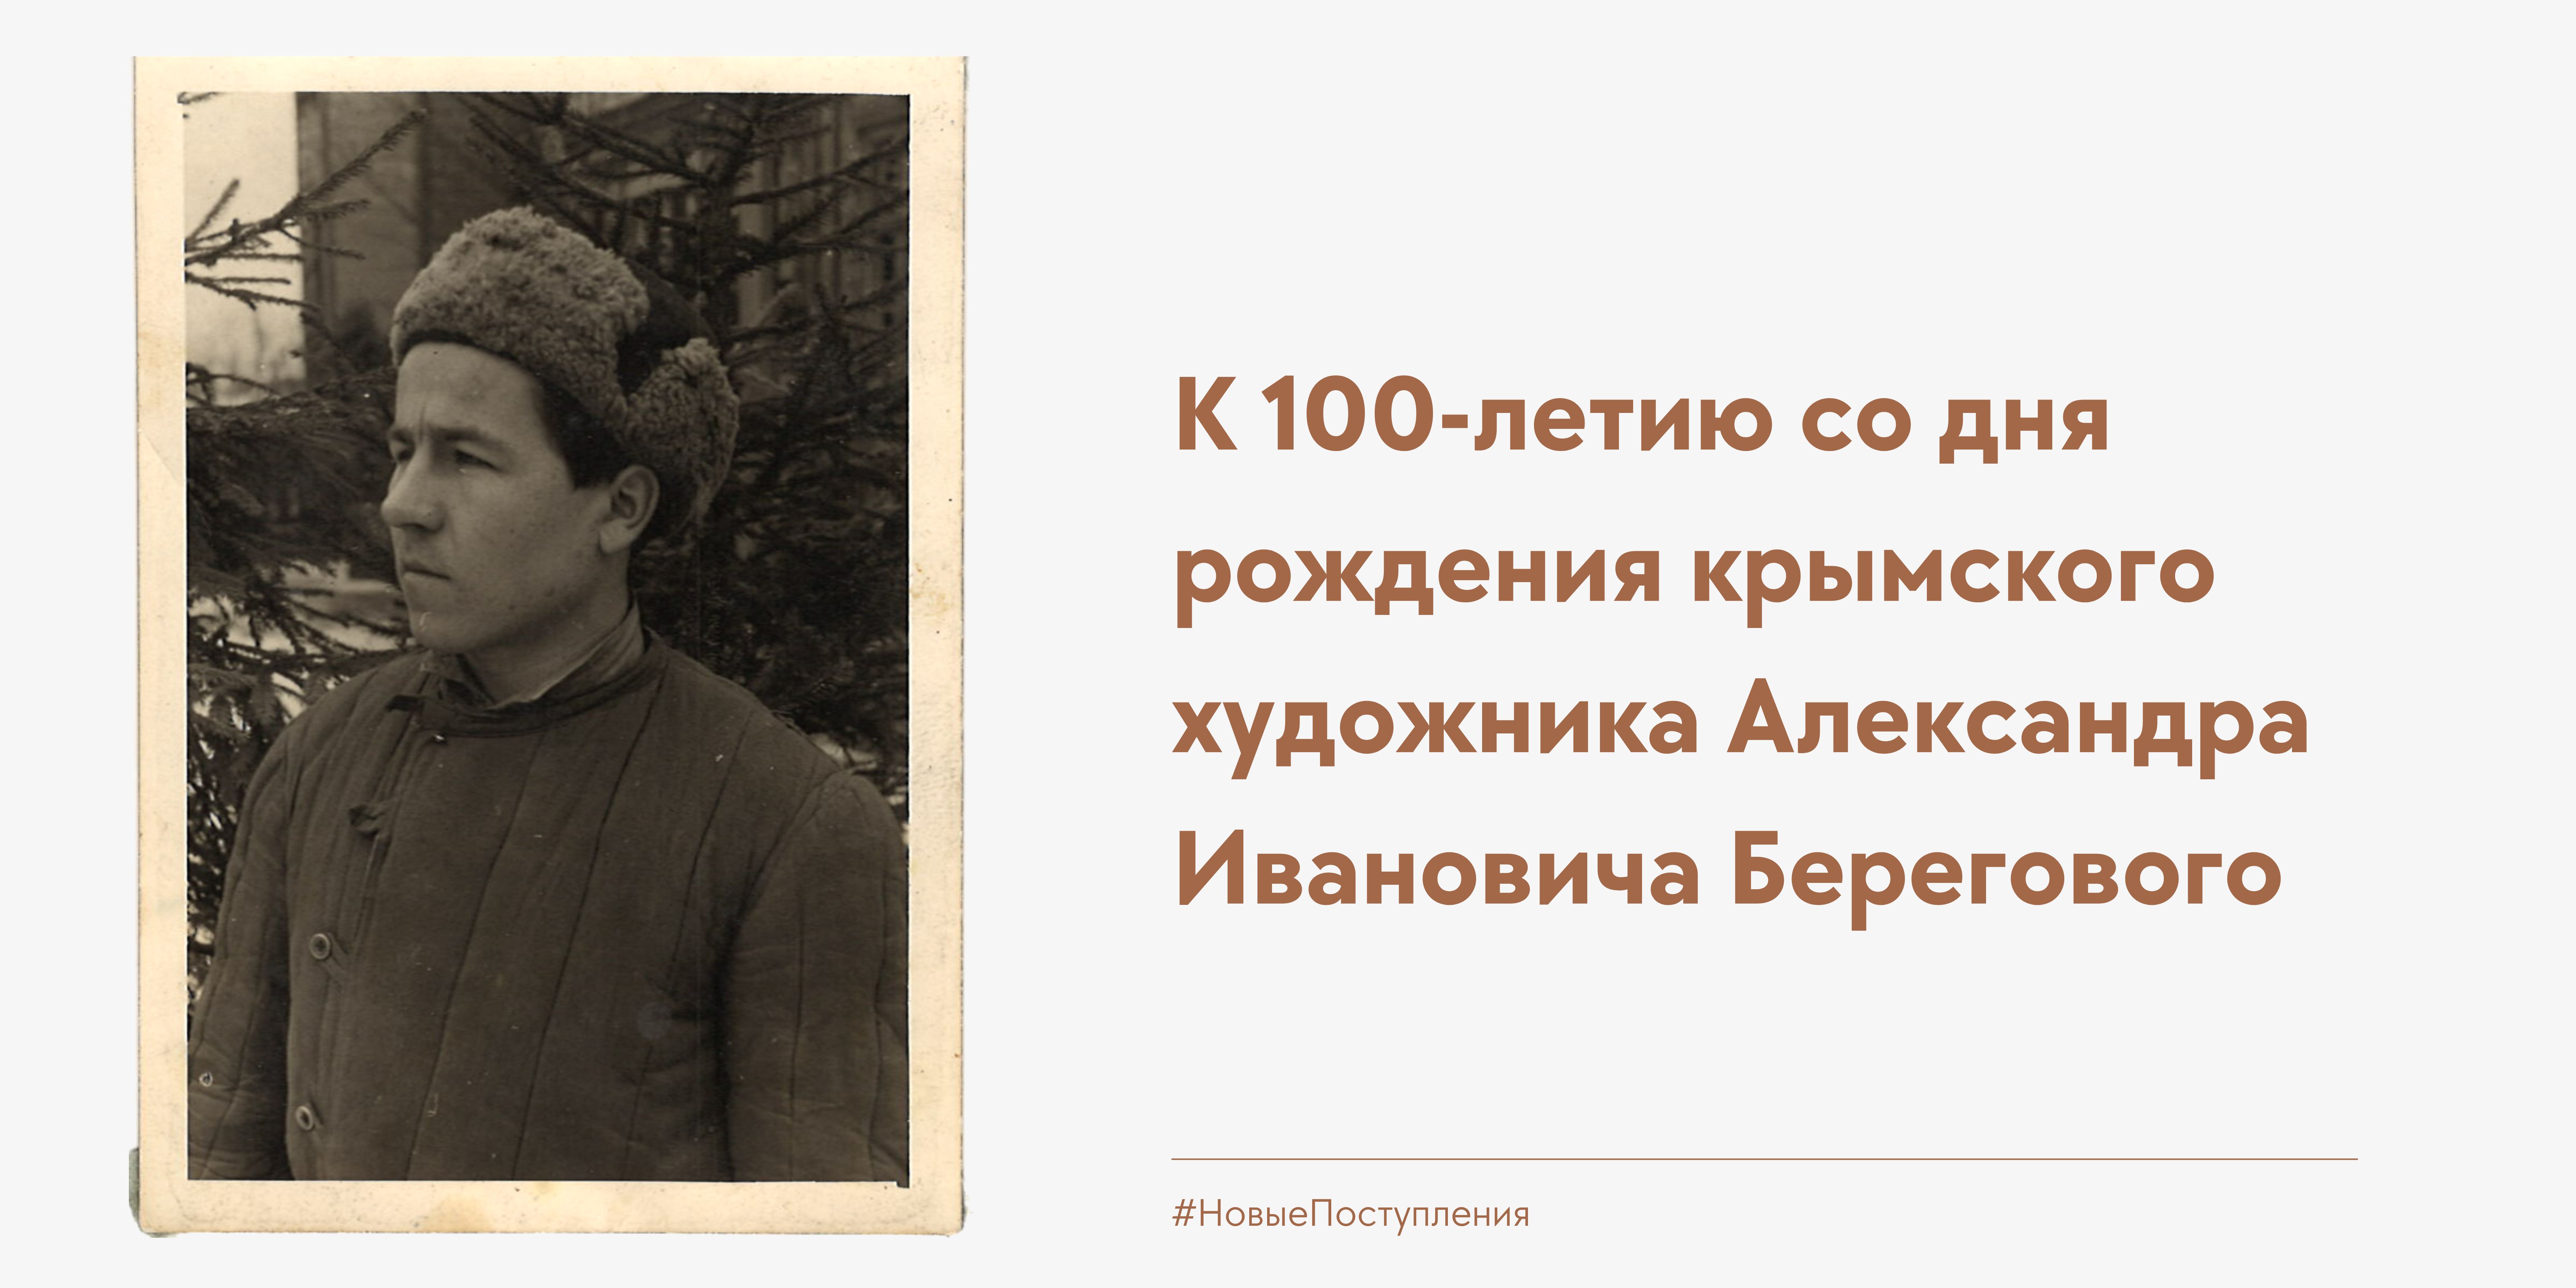 К 100-летию со дня рождения А. Берегового